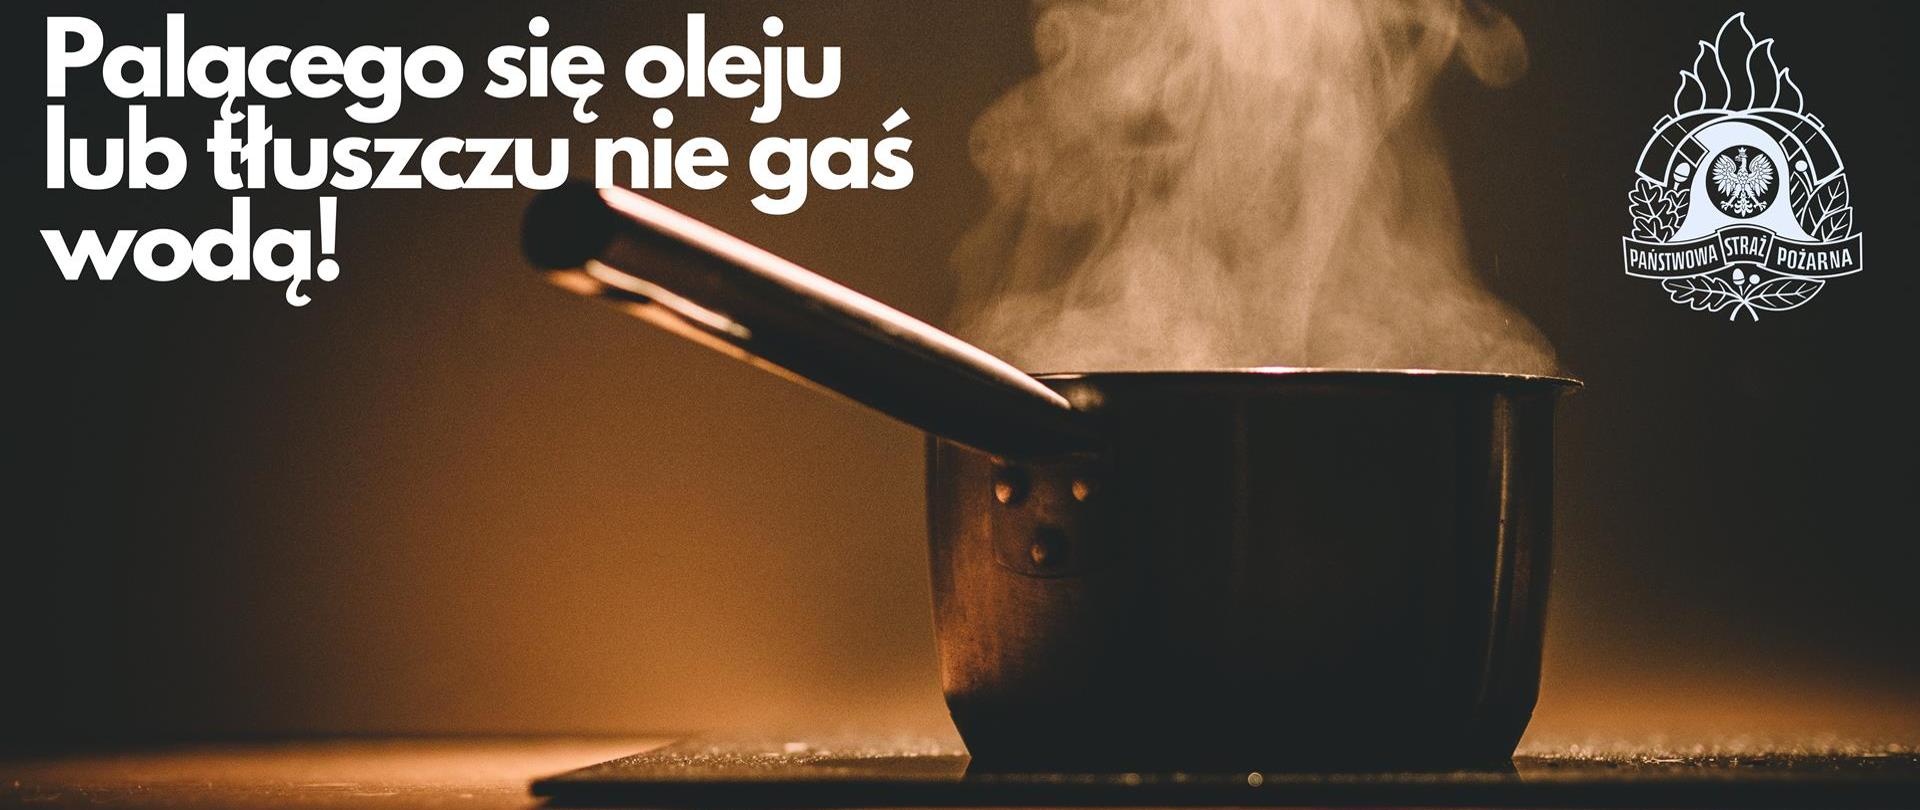 Grafika przedstawia garnek na kuchence elektrycznej z grafiką PSP oraz napisem - Palącego się oleju lub tłuszczy nie gaś wodą